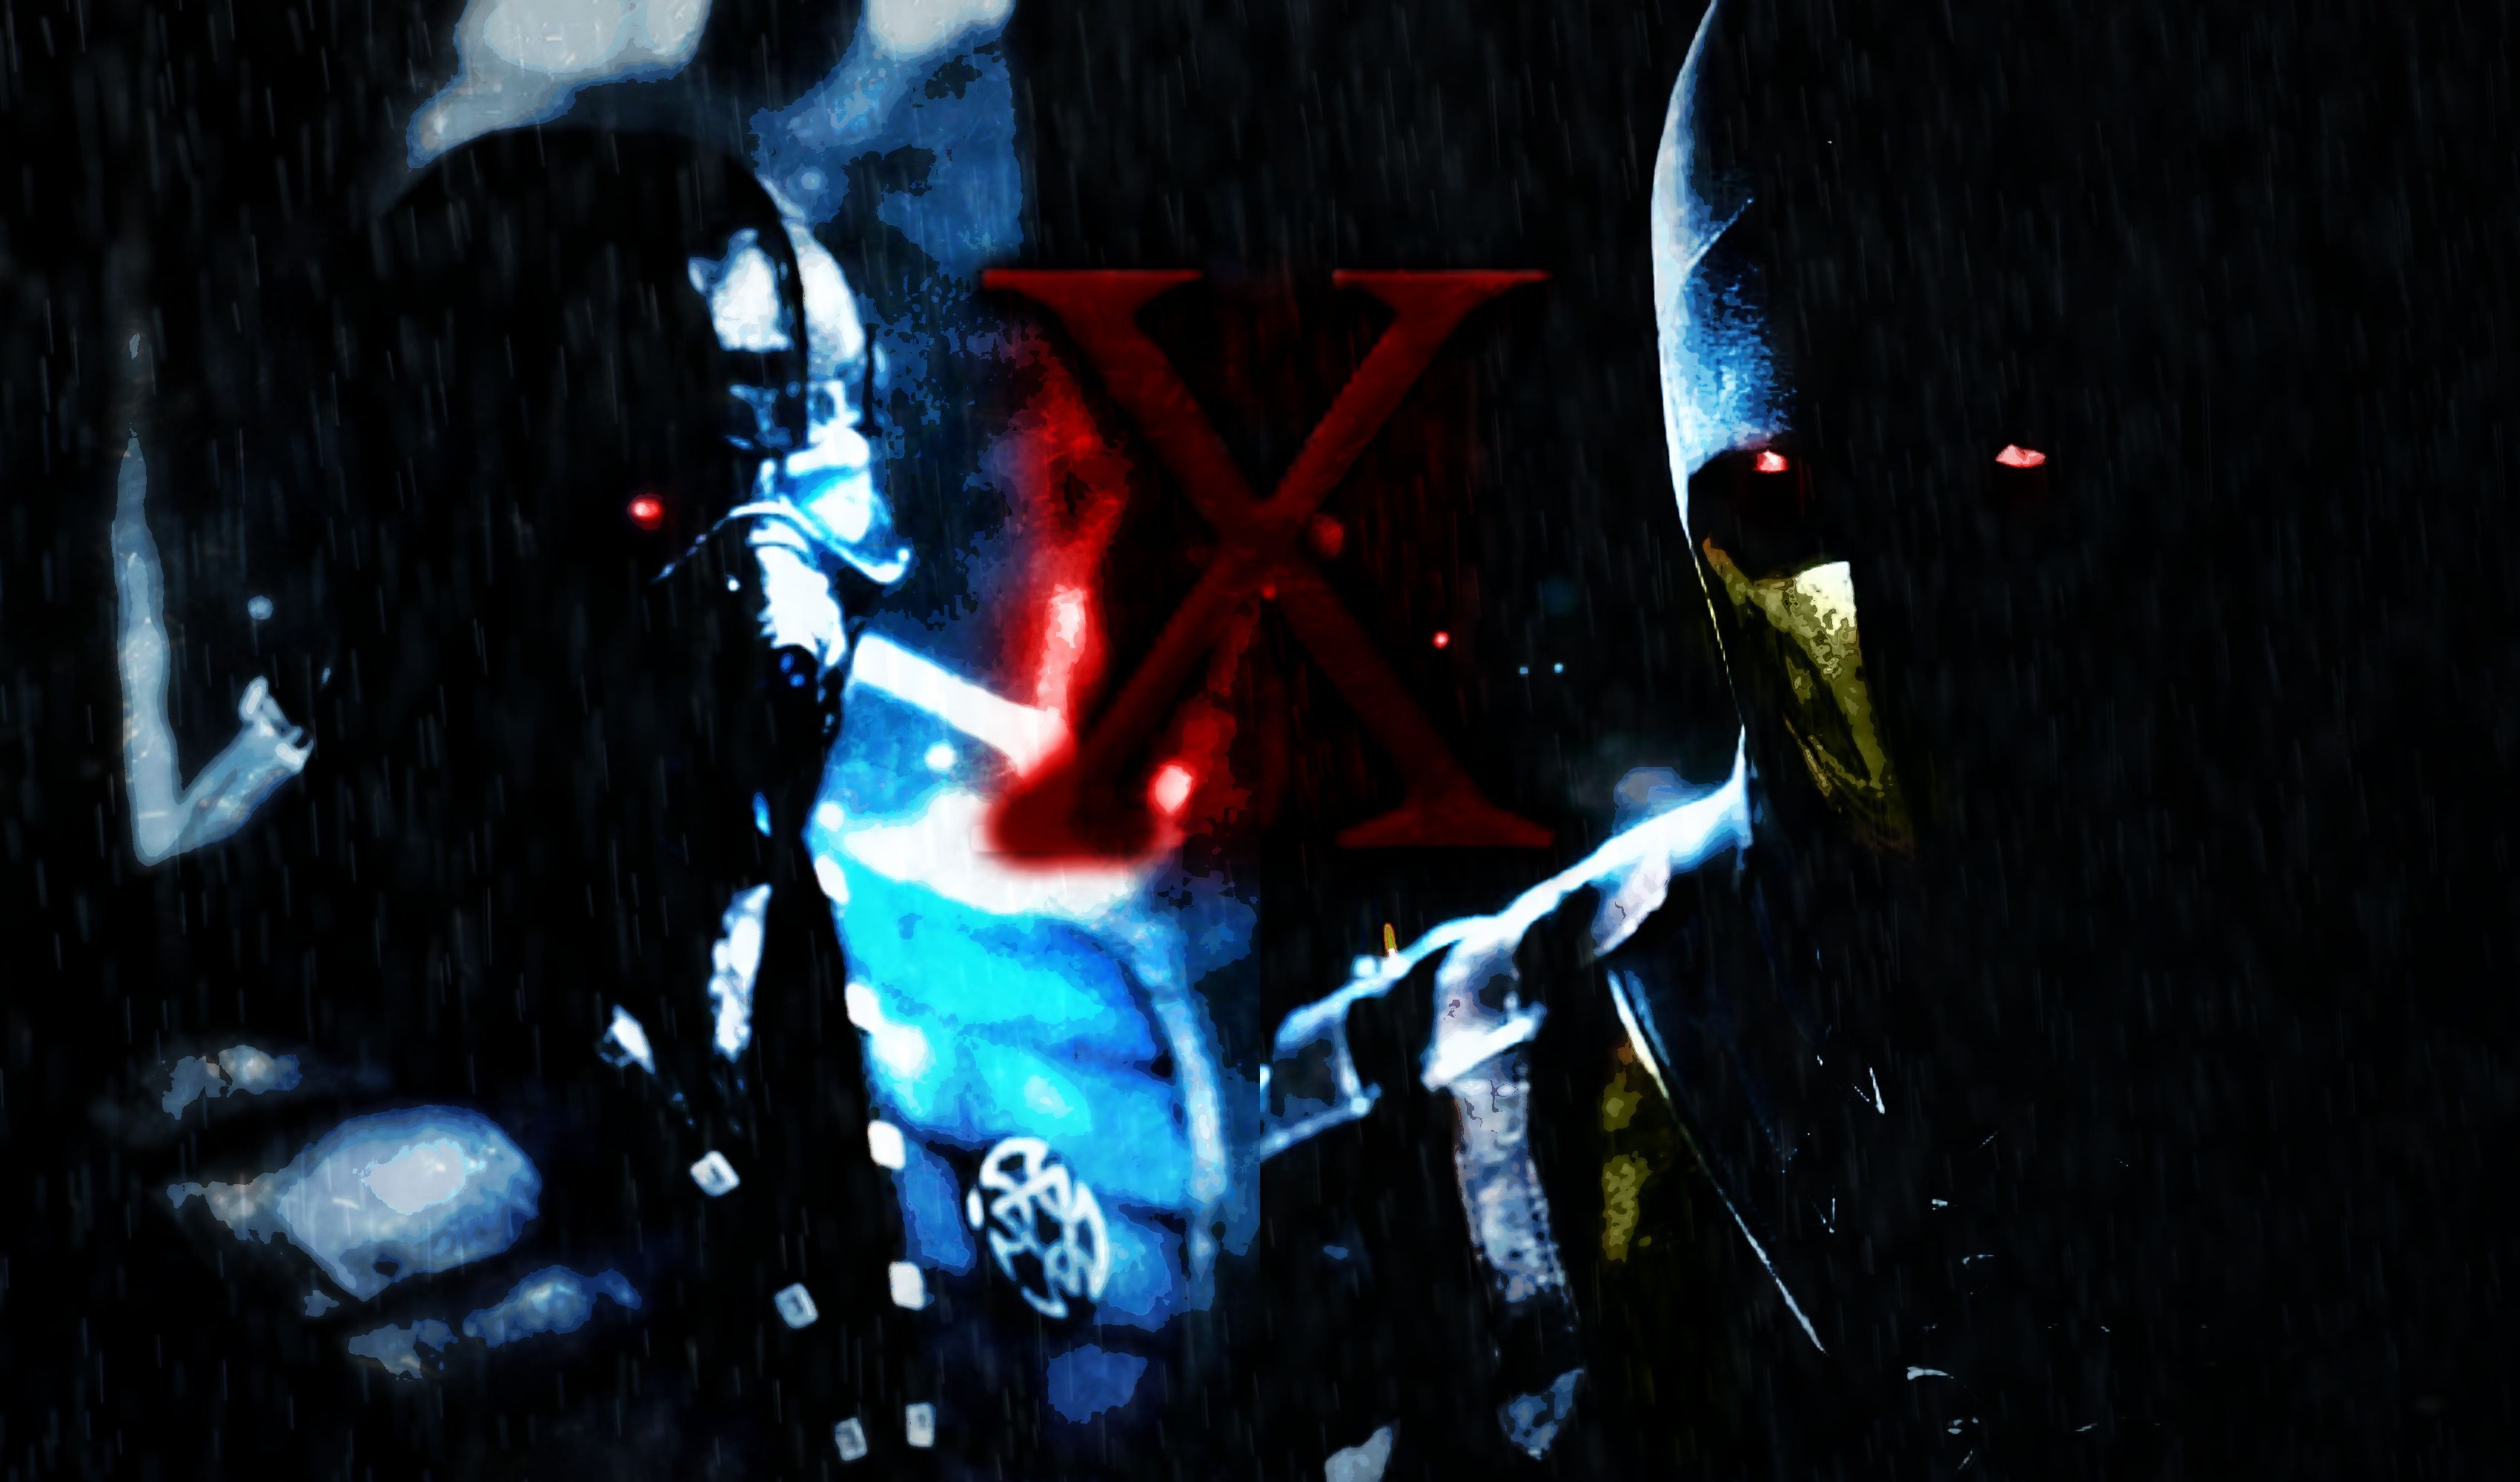 WALLPAPER on MortalKombat-X - DeviantArt